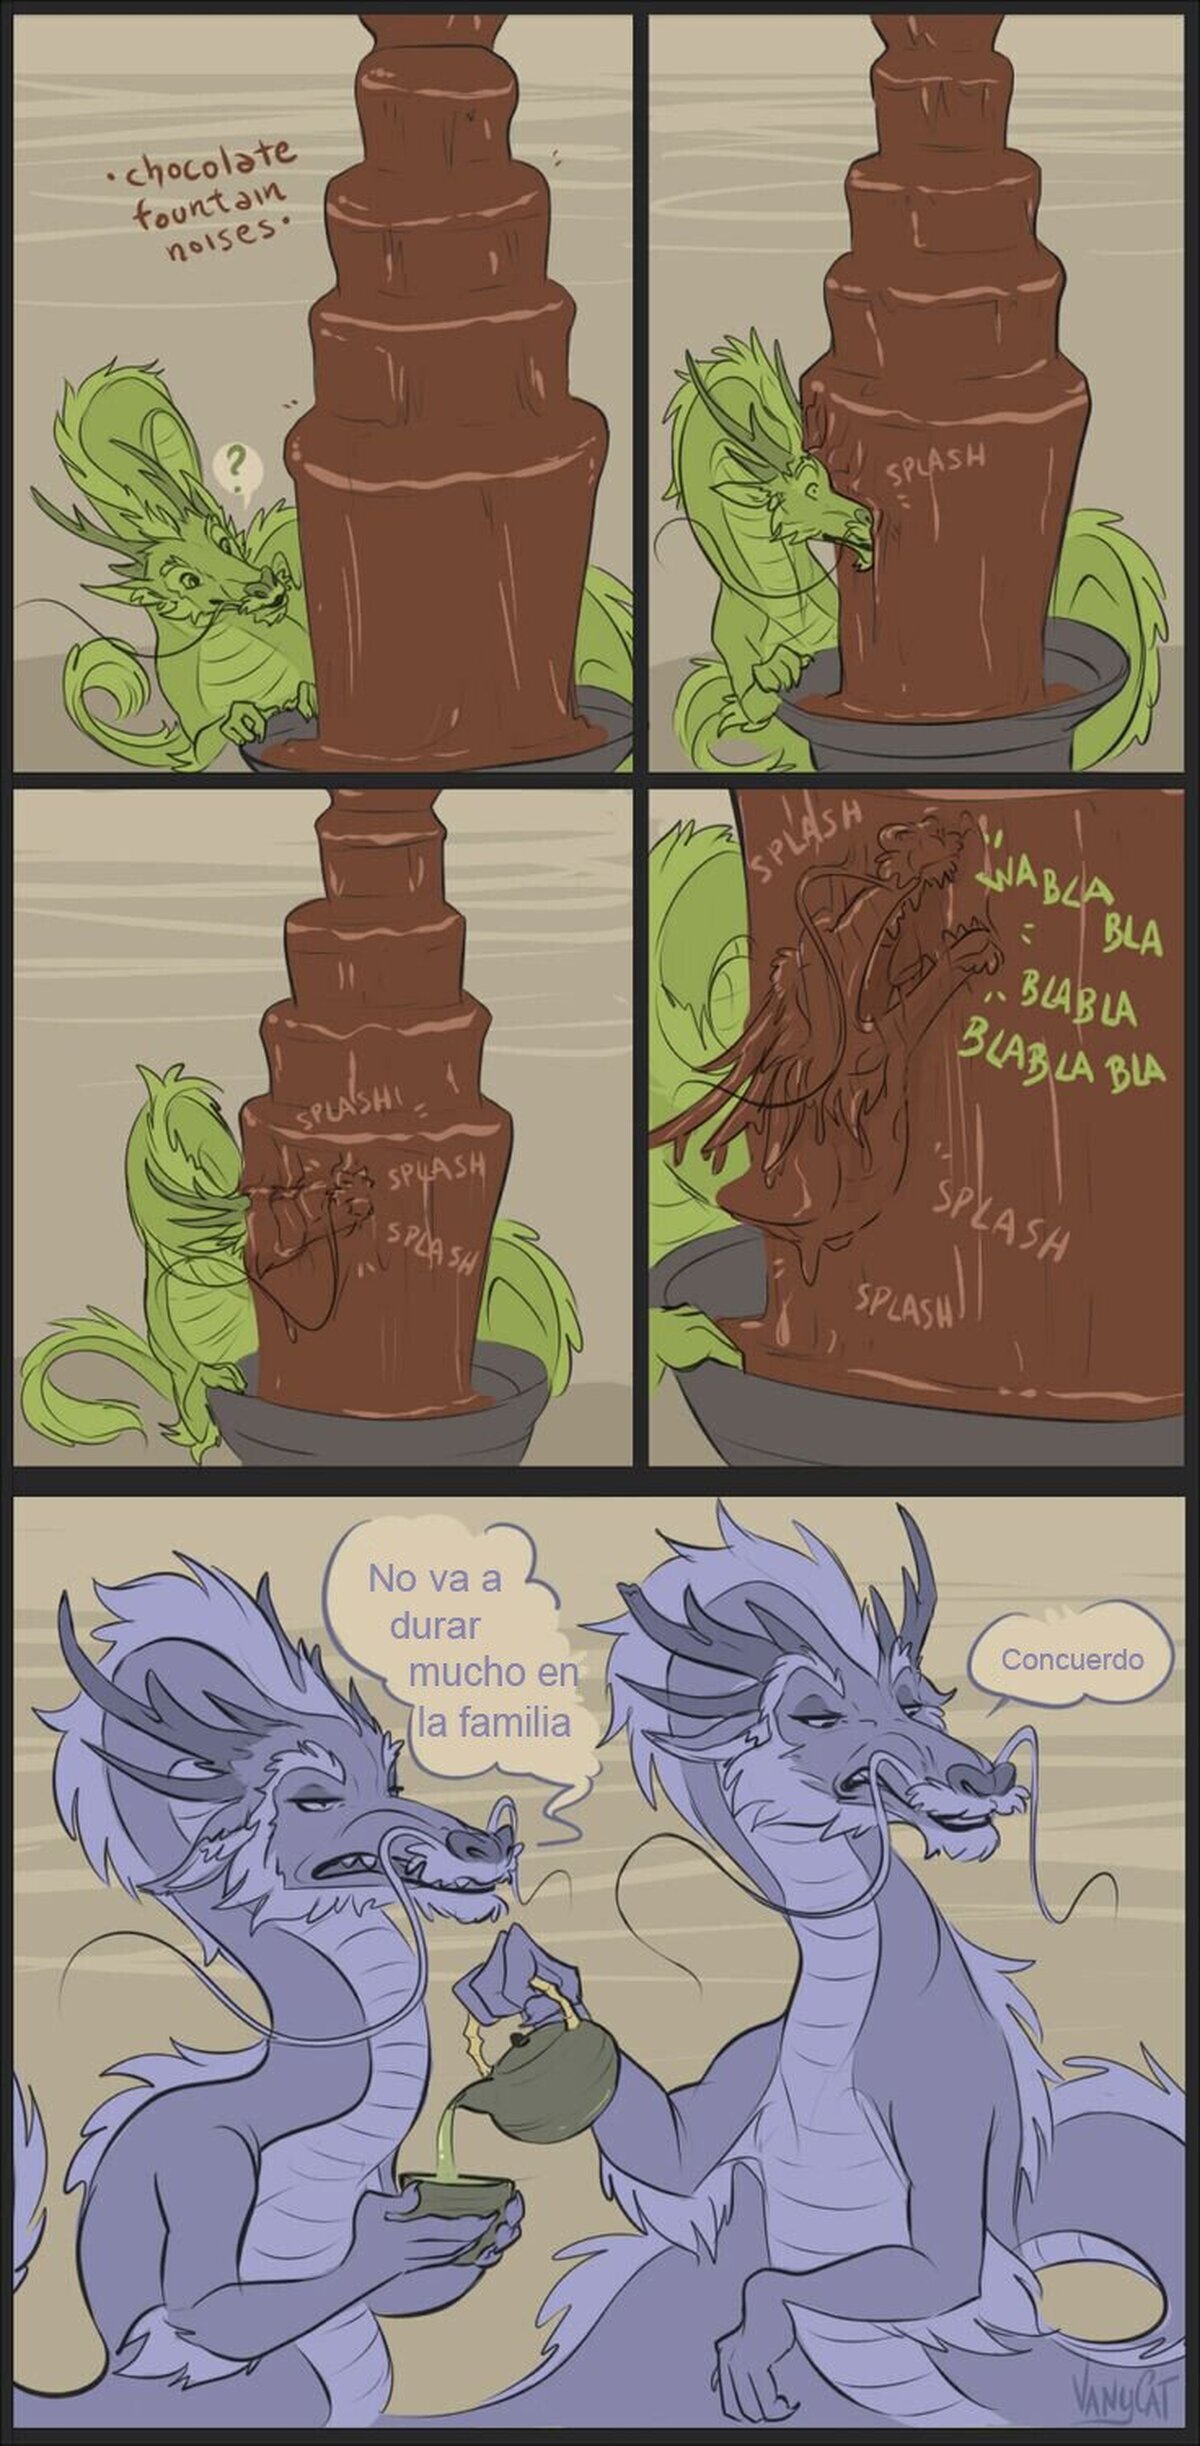 El chocolate también le hace daño a los dragones